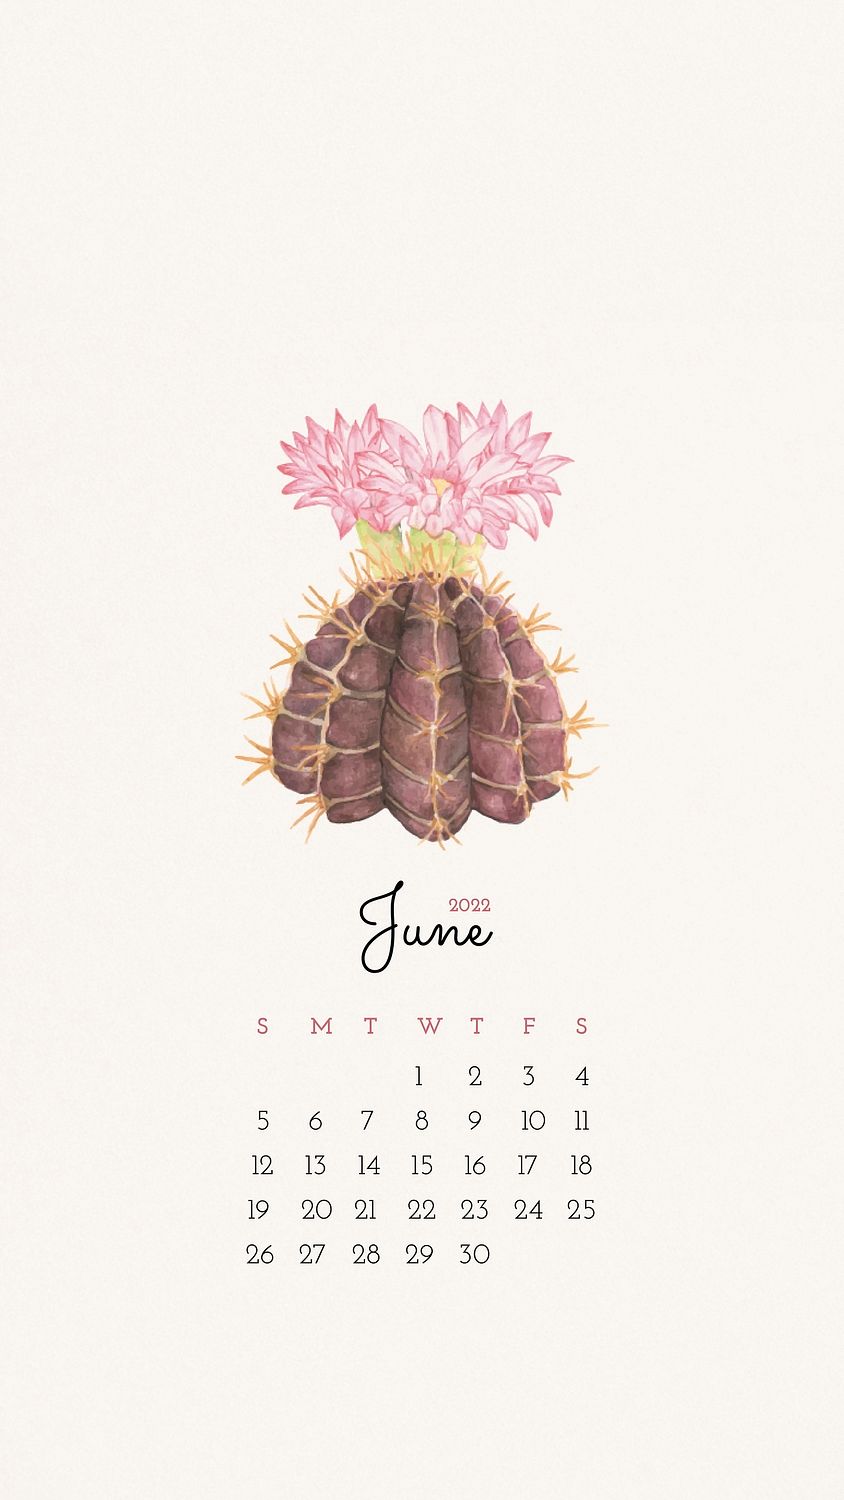 Cactus June 2022 monthly calendar, | Premium Photo - rawpixel